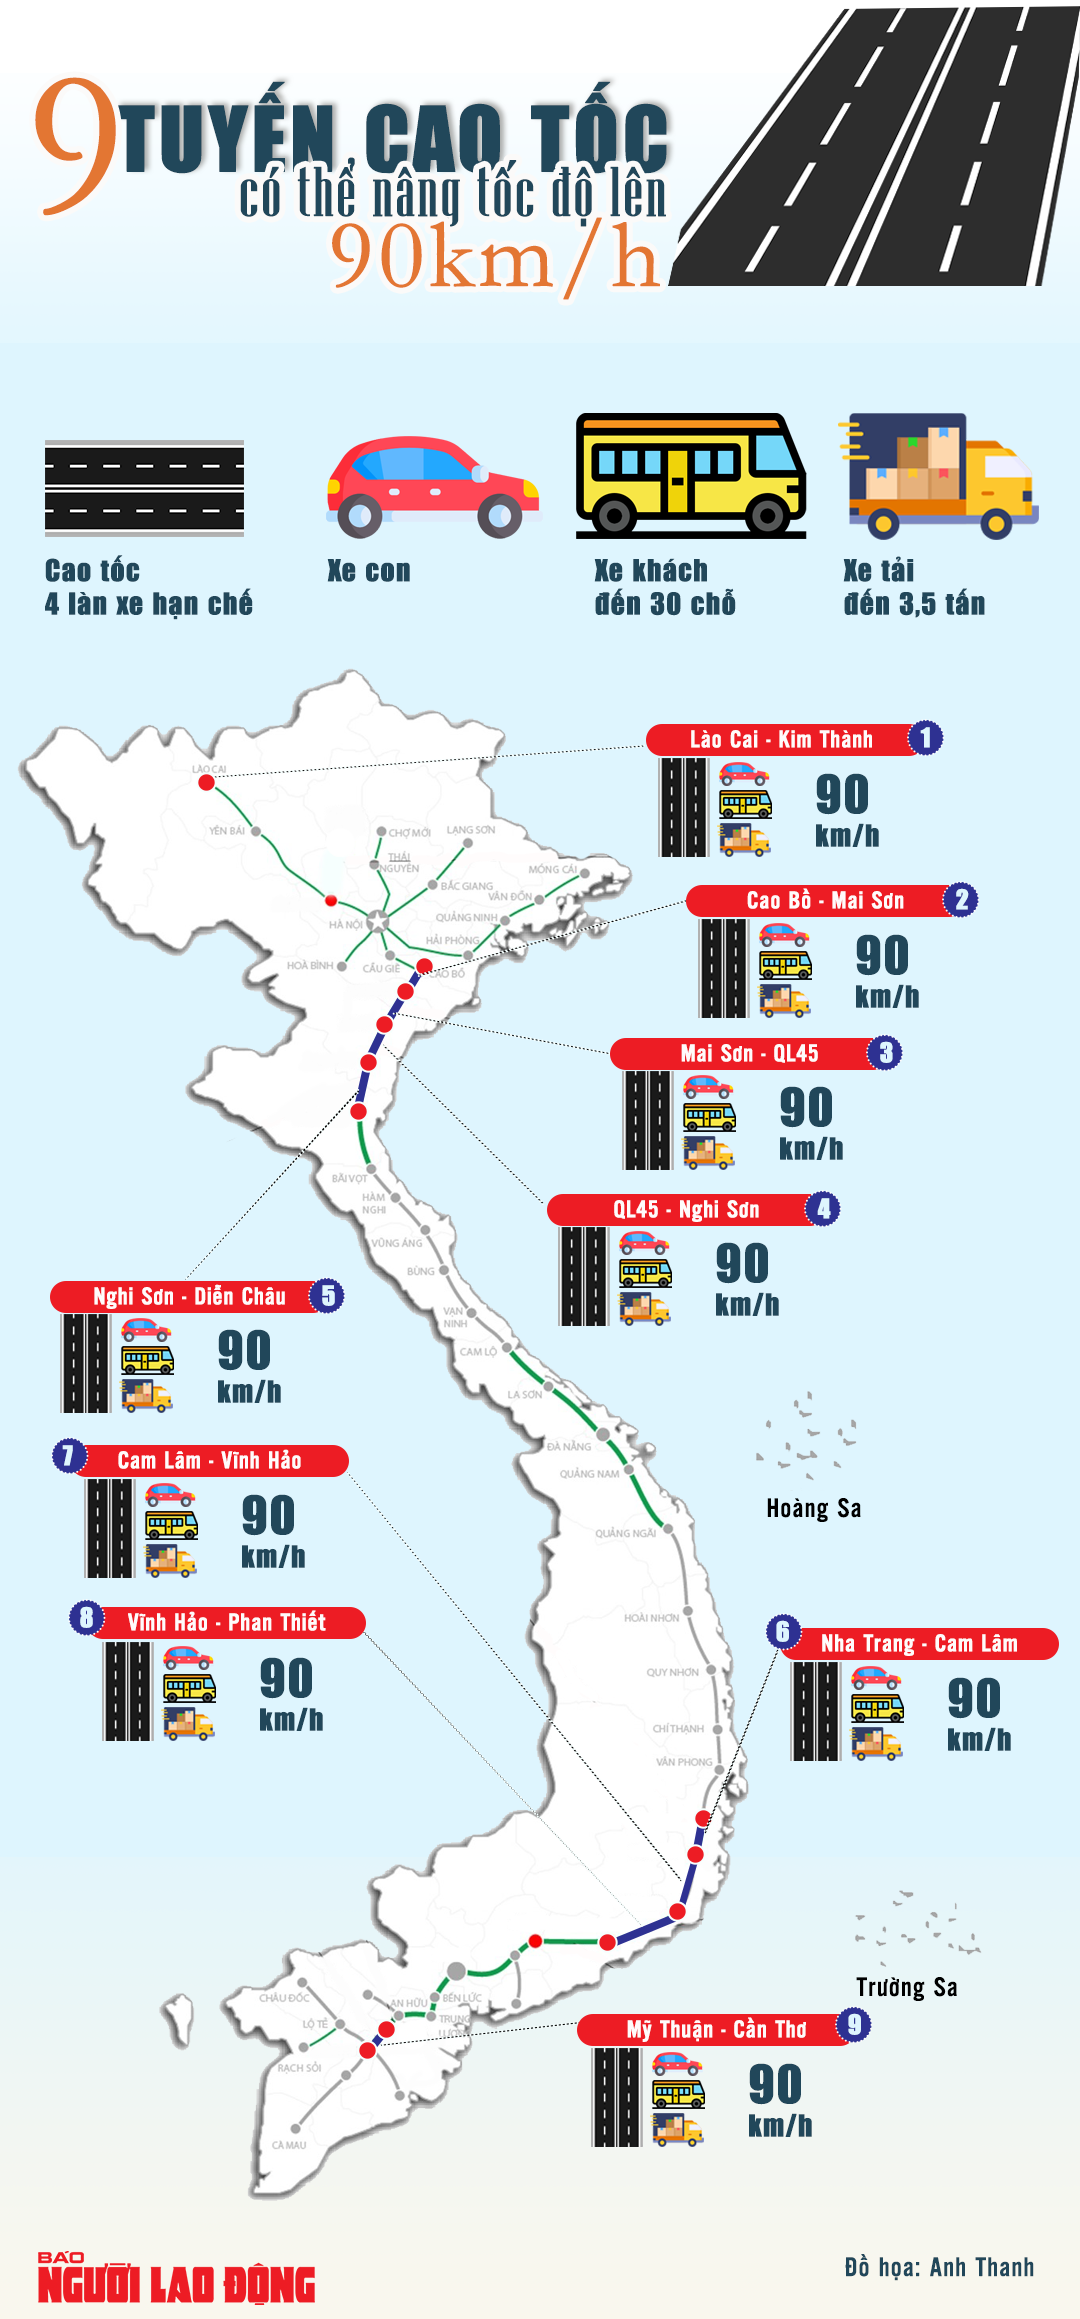 [Infographic] 9 tuyến cao tốc 4 làn hạn chế có thể nâng tốc độ tối đa 90 km/h - 1